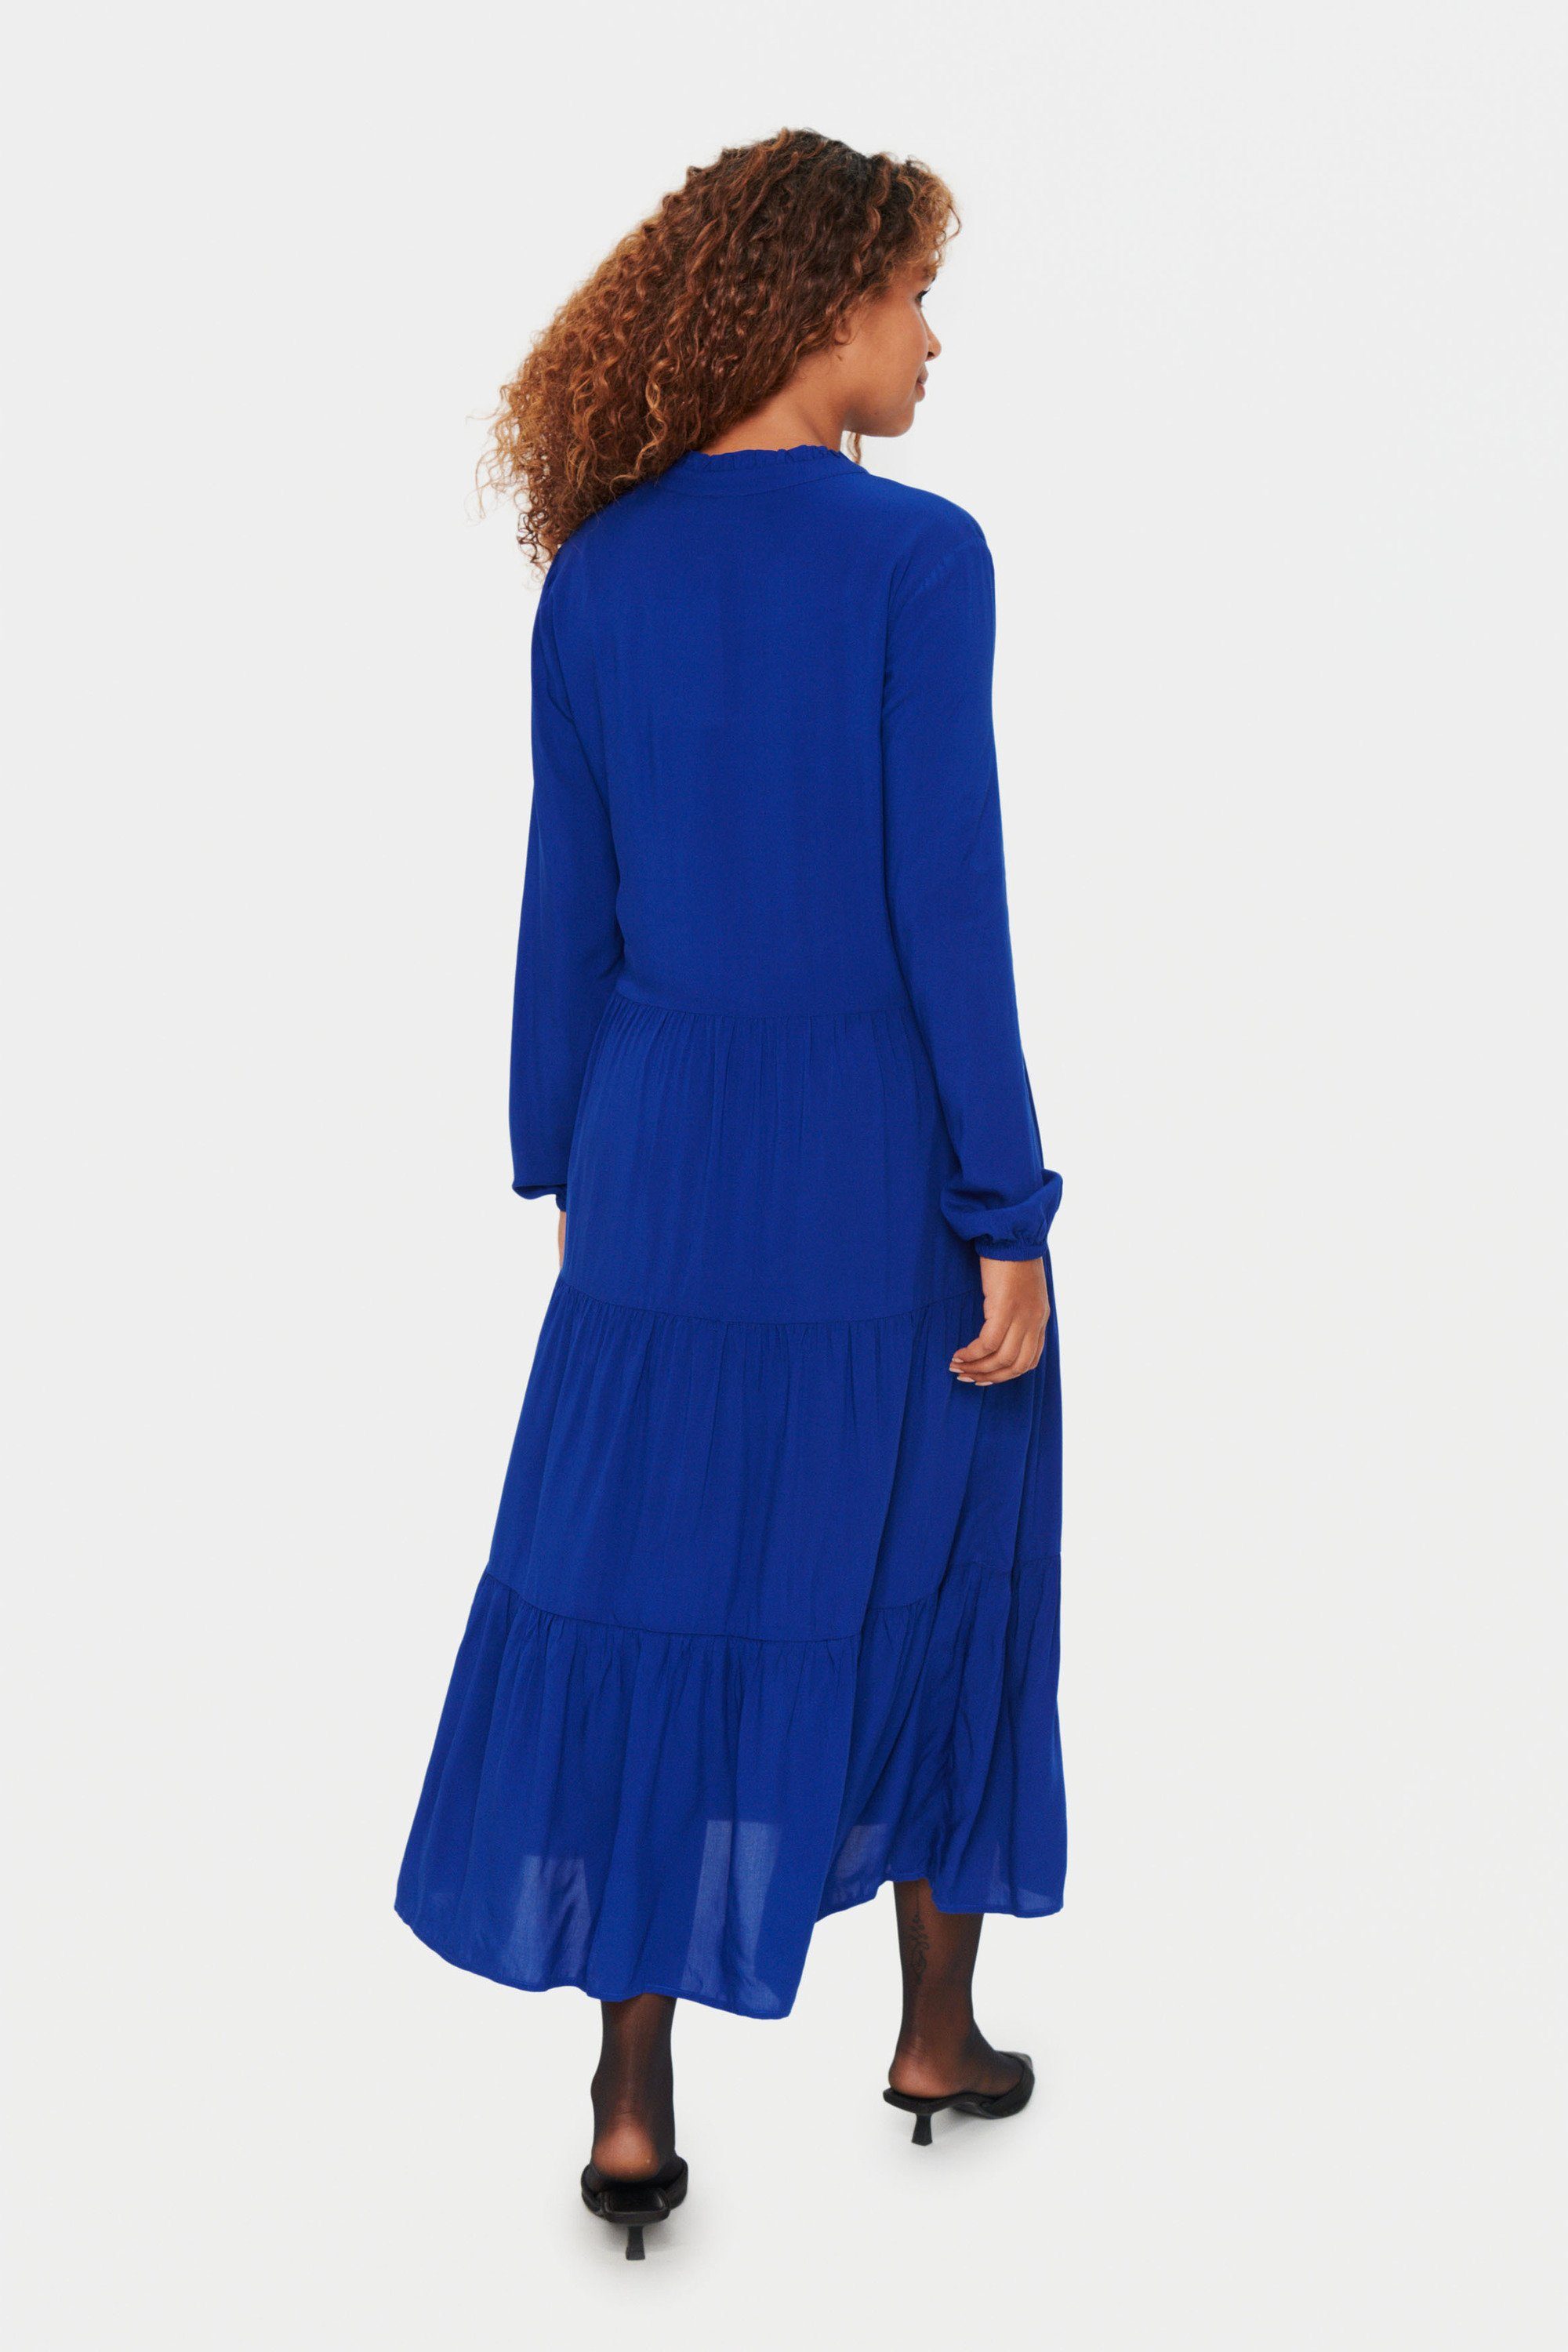 Saint Blue Kleid Sodalite Jerseykleid Tropez EdaSZ